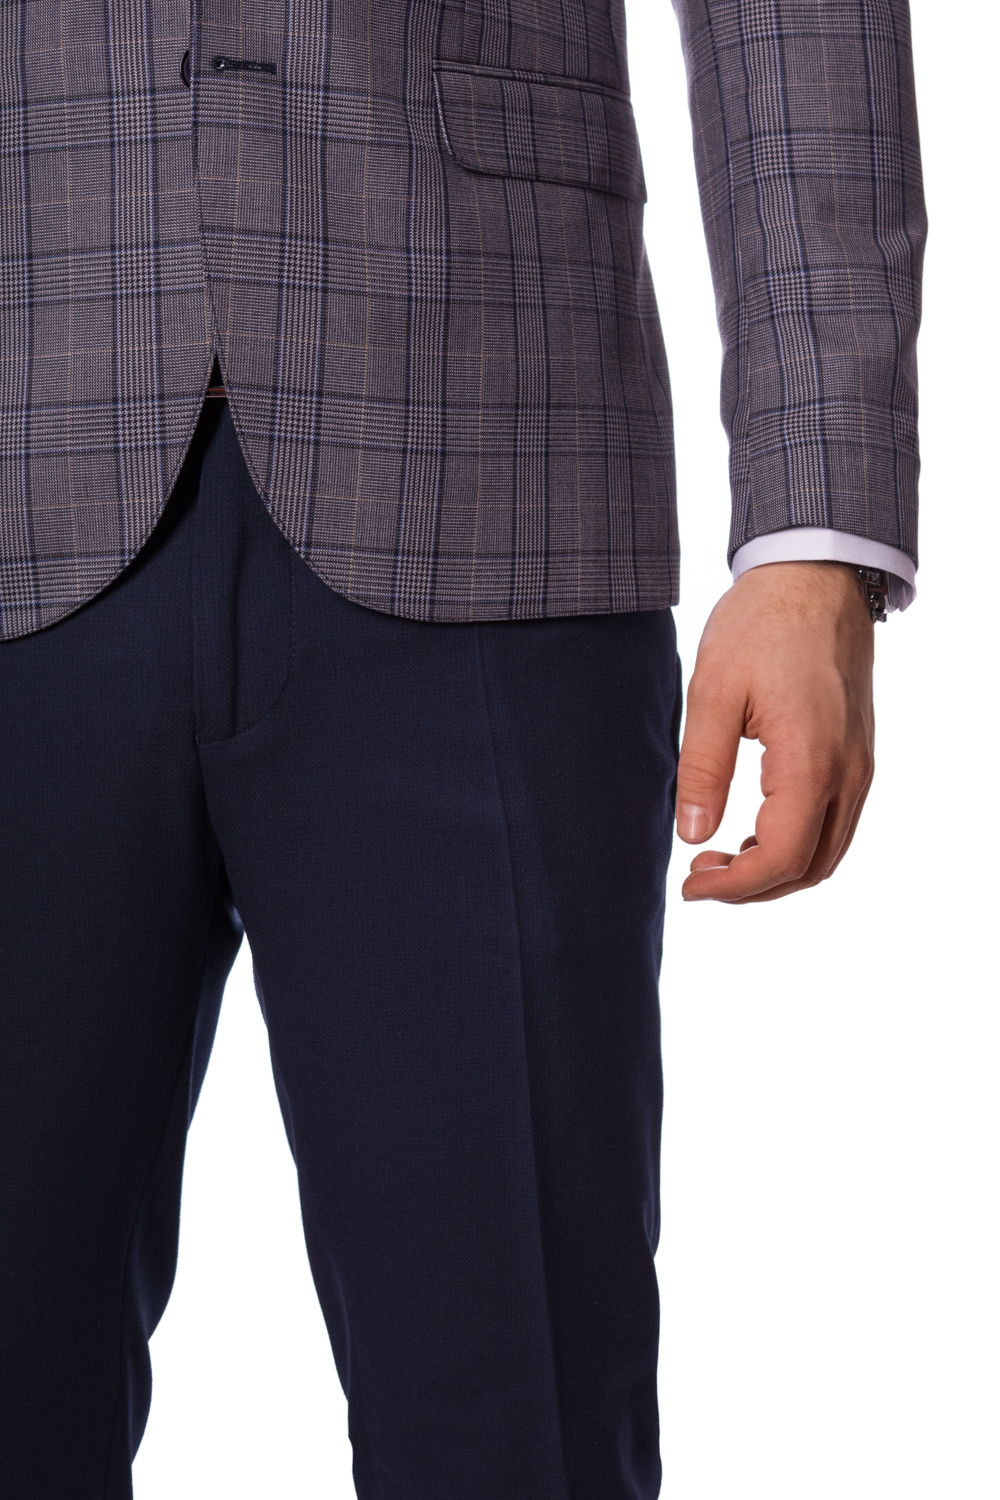 Pantaloni bleumarin barbati max fashion elegant